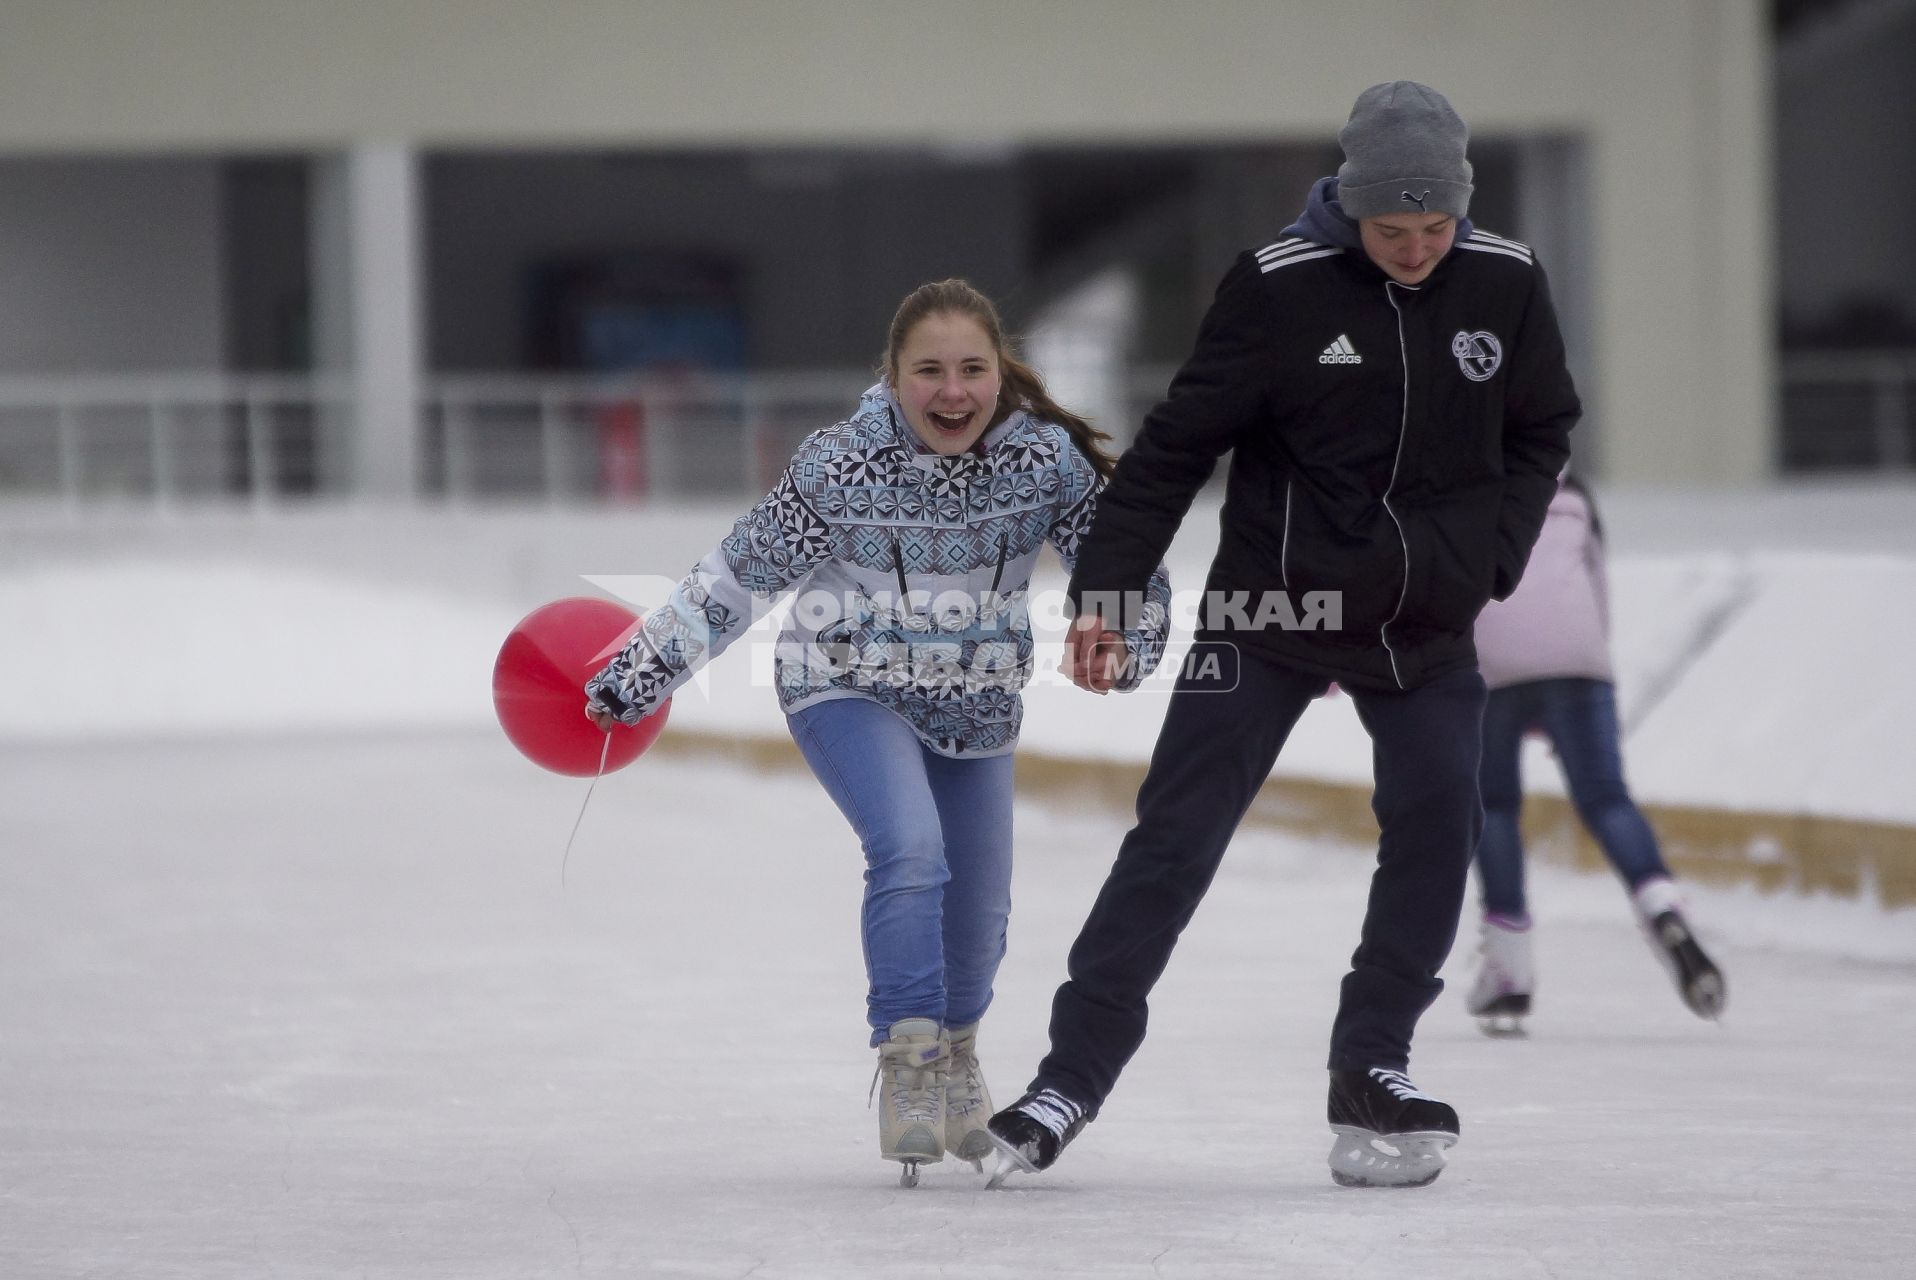 Каток на центральном стадионе Екатеринбурга. На снимке: молодежь катается на коньках.